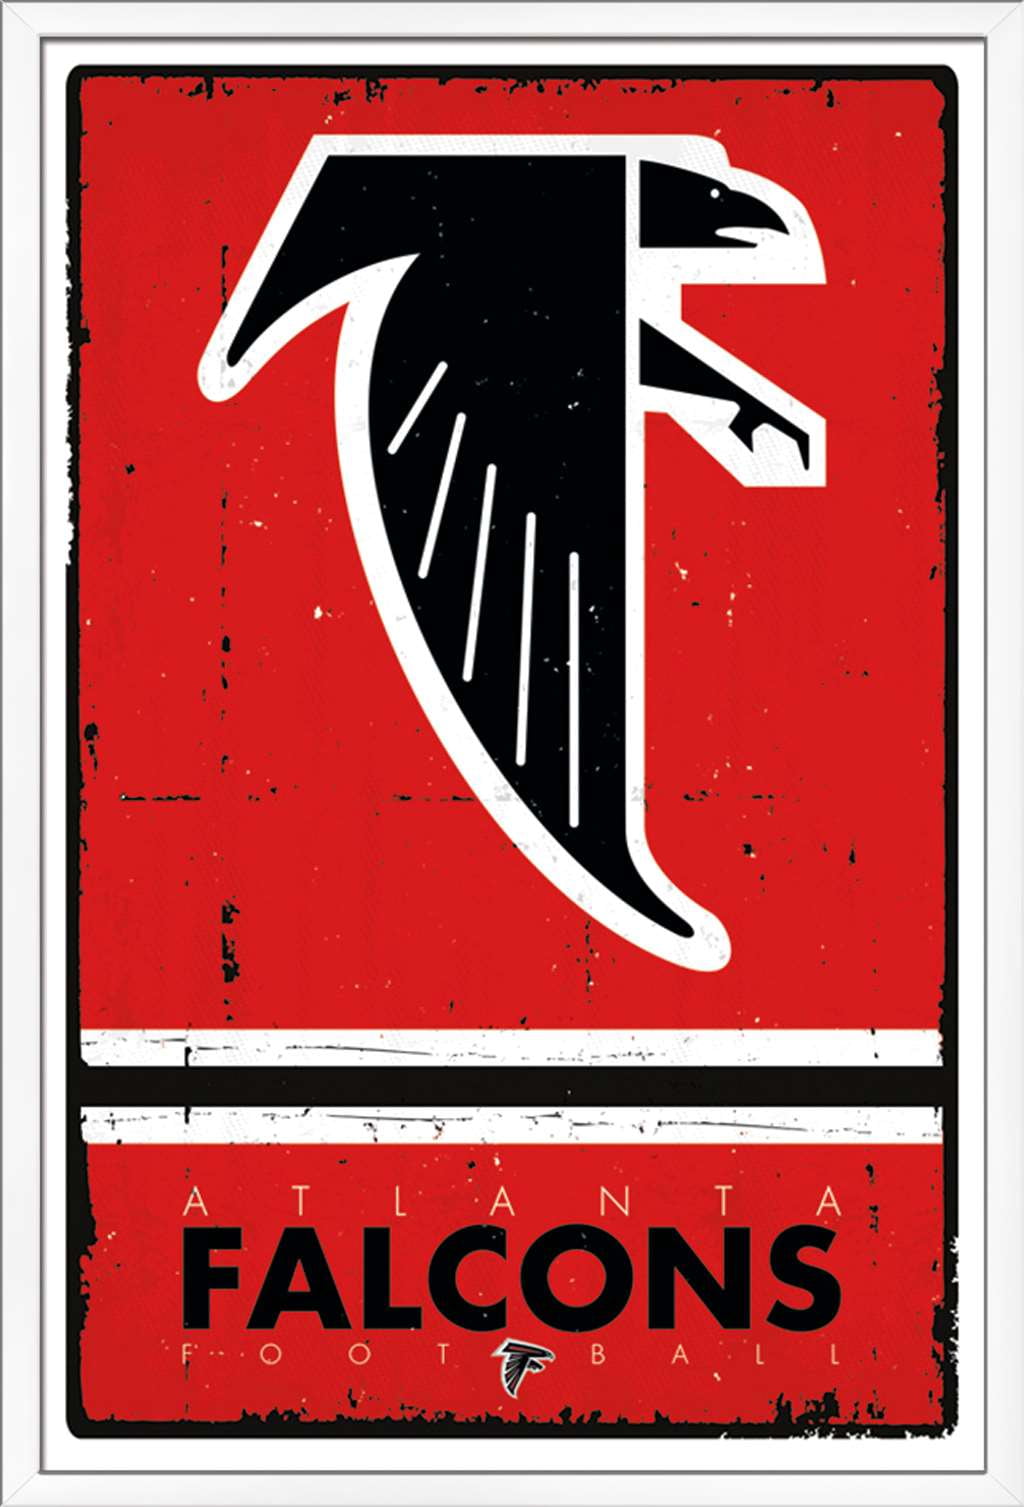 Atlanta Falcons - Atlanta Falcons